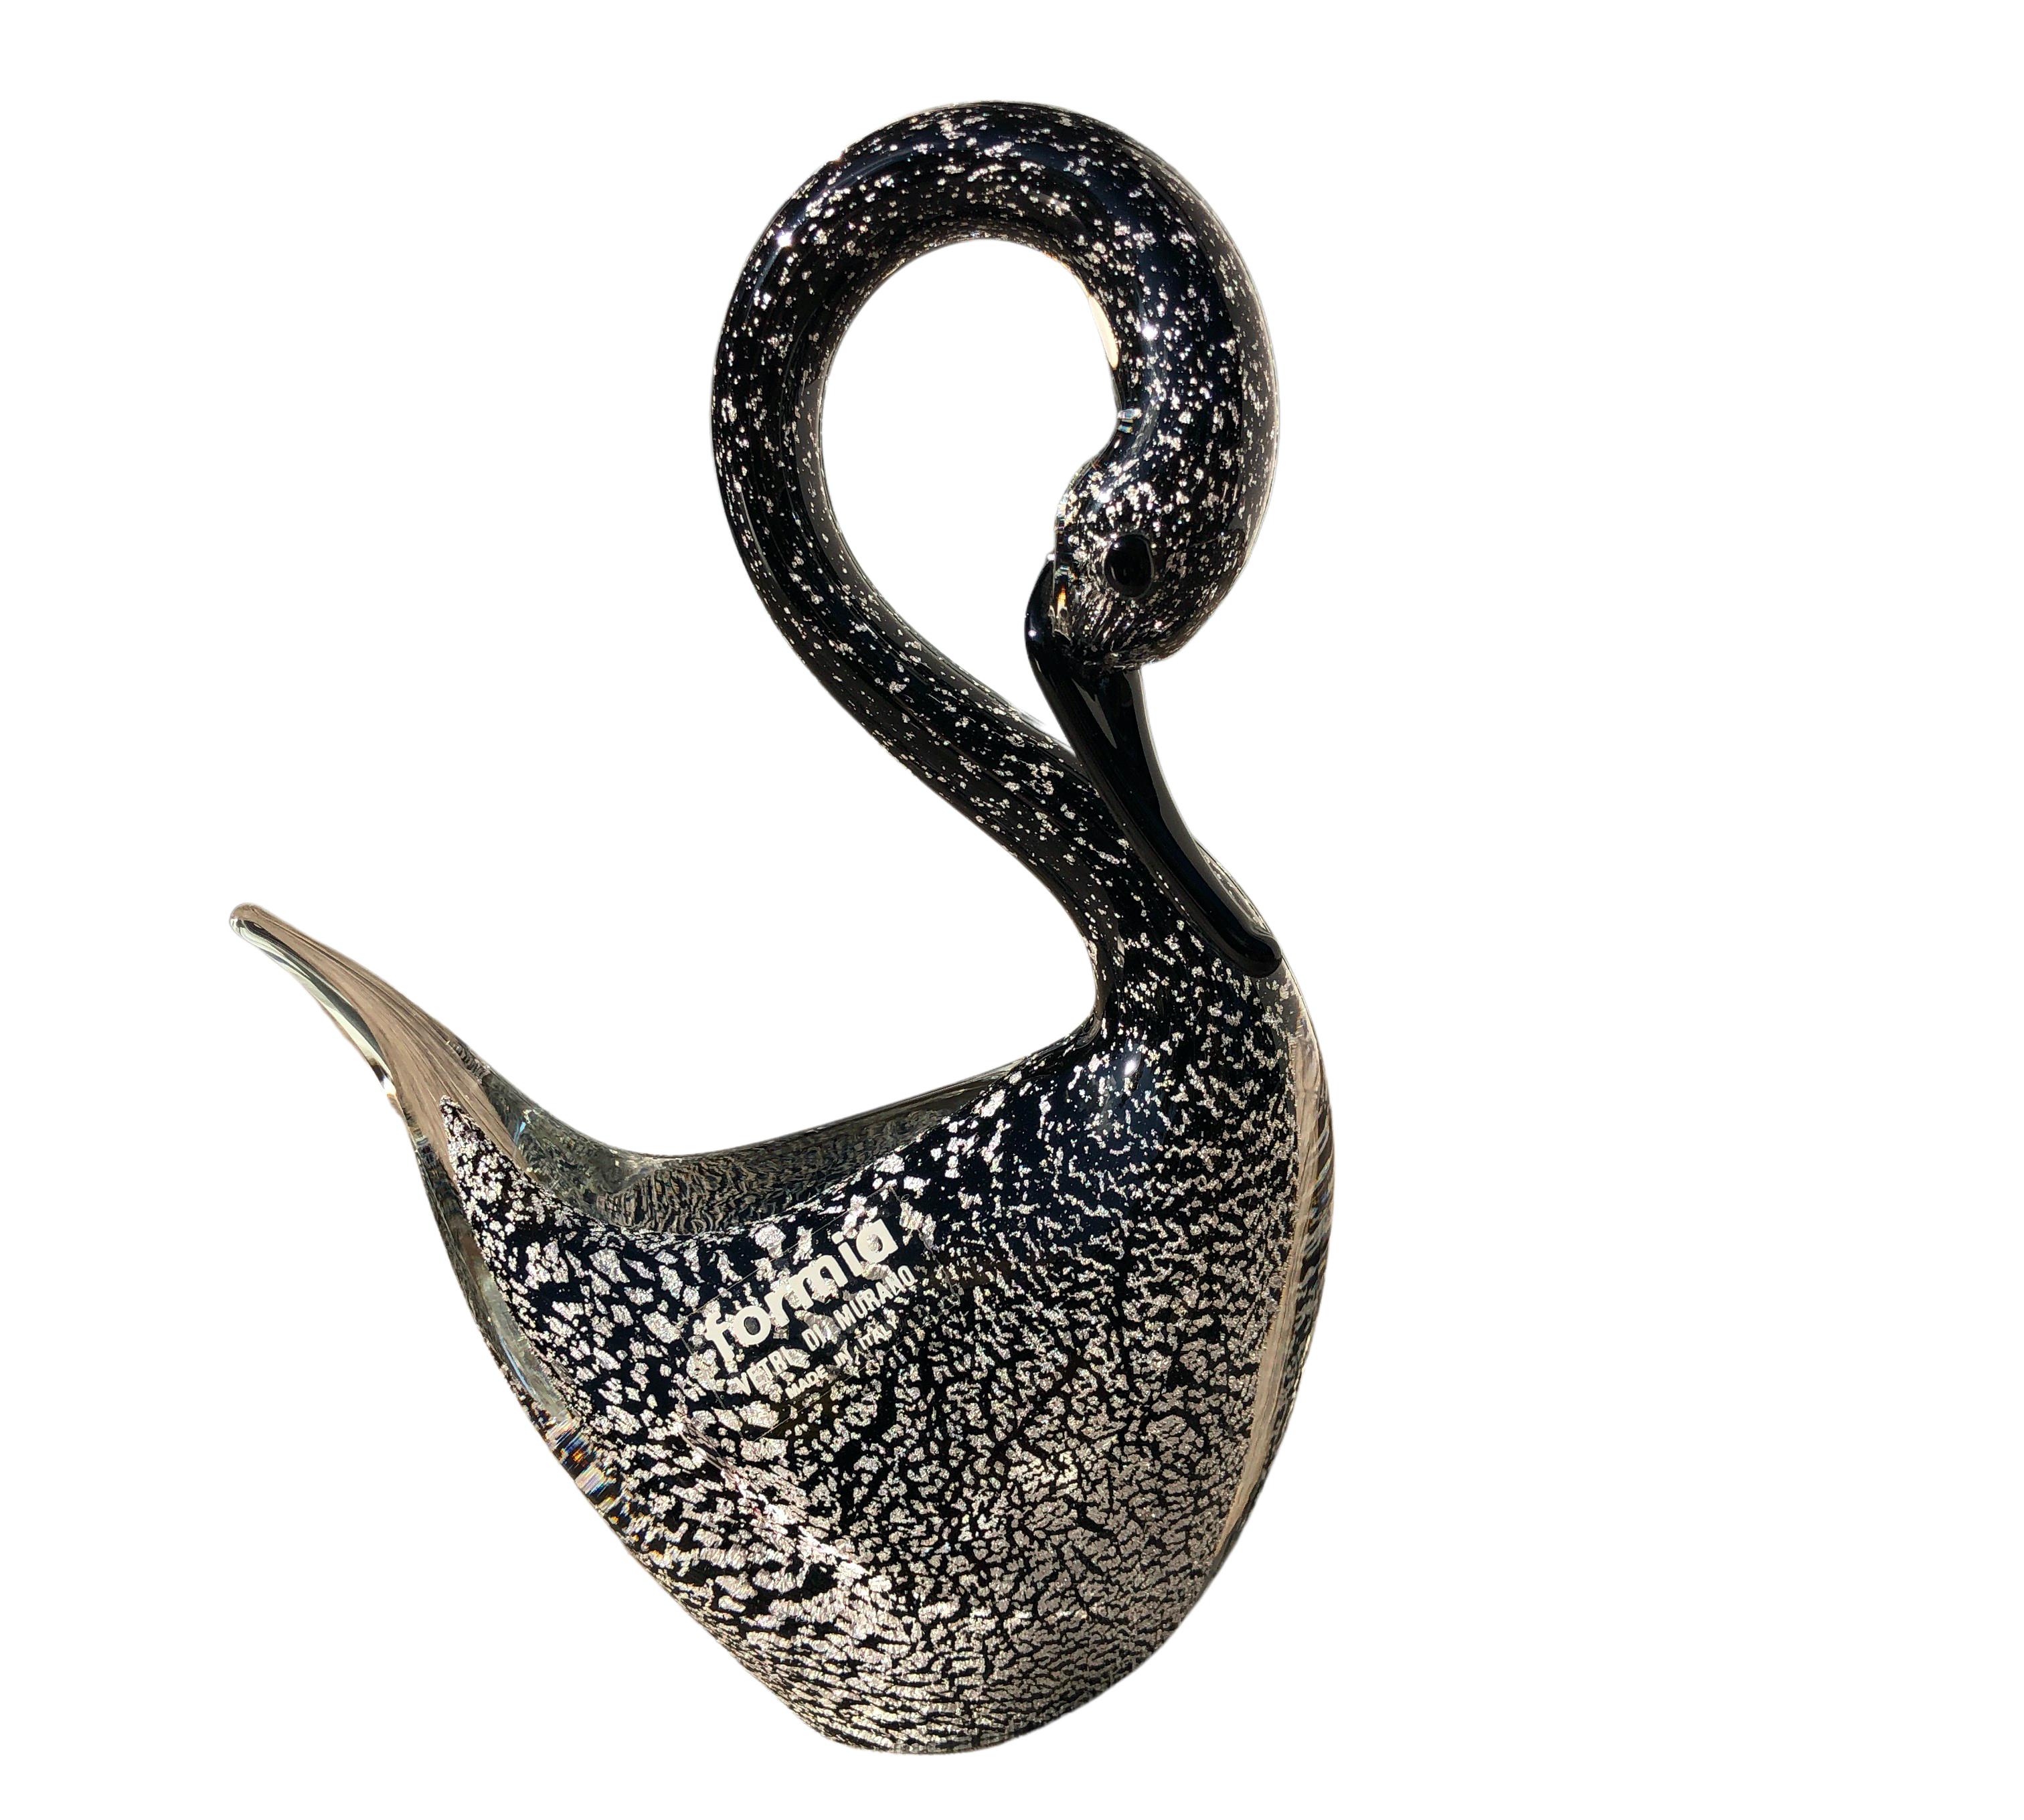 Cette magnifique figurine de cygne en verre de Murano a été fabriquée par Formia Murano. Le noyau intérieur noir solide avec une masse d'inclusions d'argent aventurine est très décoratif. Exellent condicion. Joli à utiliser comme sculpture mais